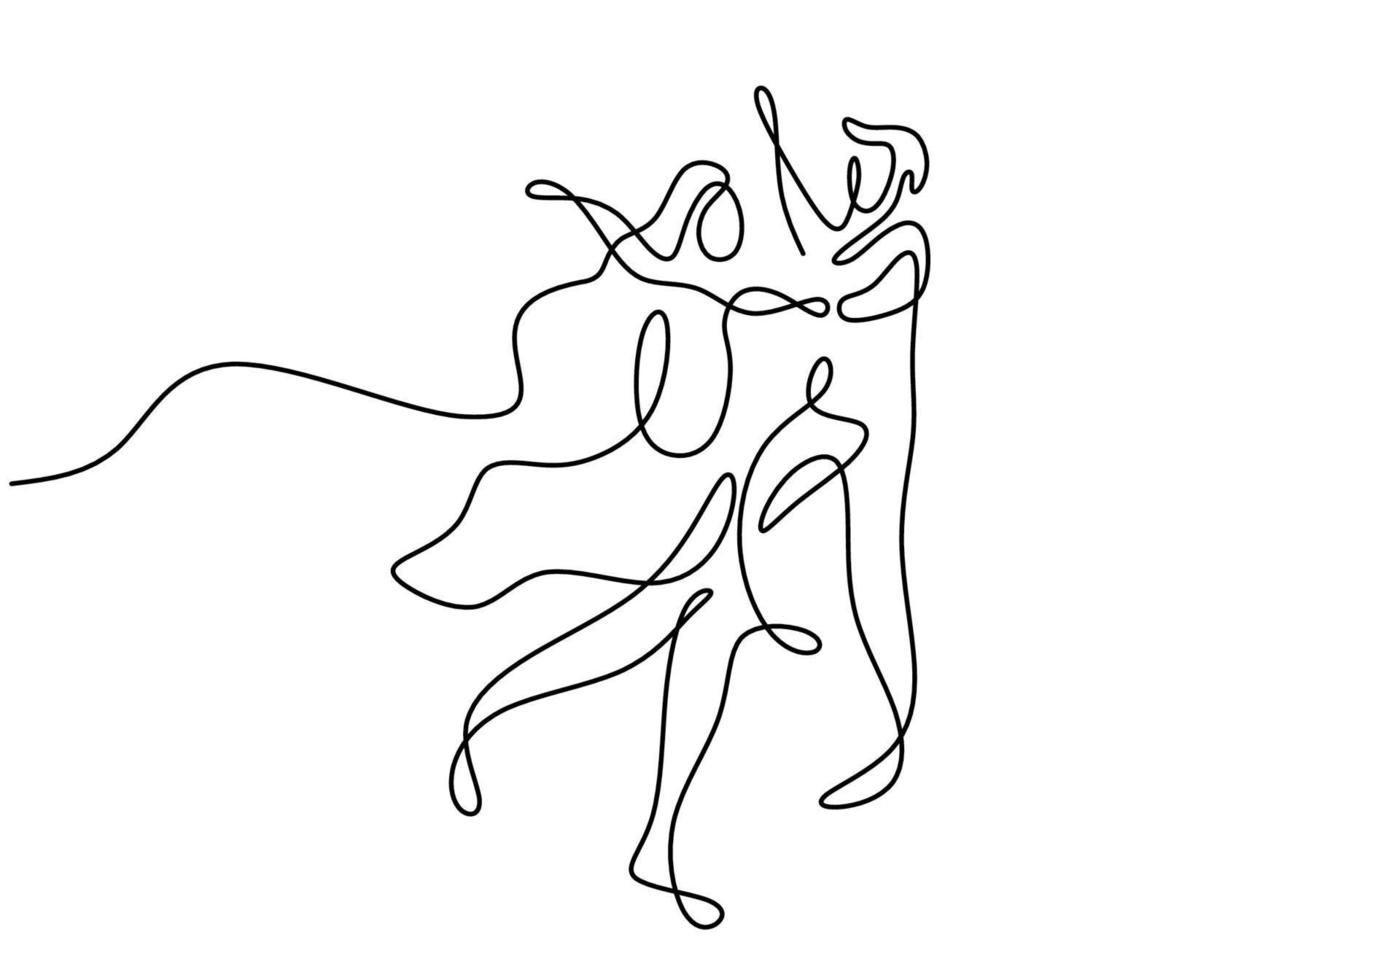 een lijntekening van jonge gelukkige paar man en vrouw is samen dansen. een dansende vrouw en man poseren elegant. romantische relatie concept geïsoleerd op een witte achtergrond. vector illustratie